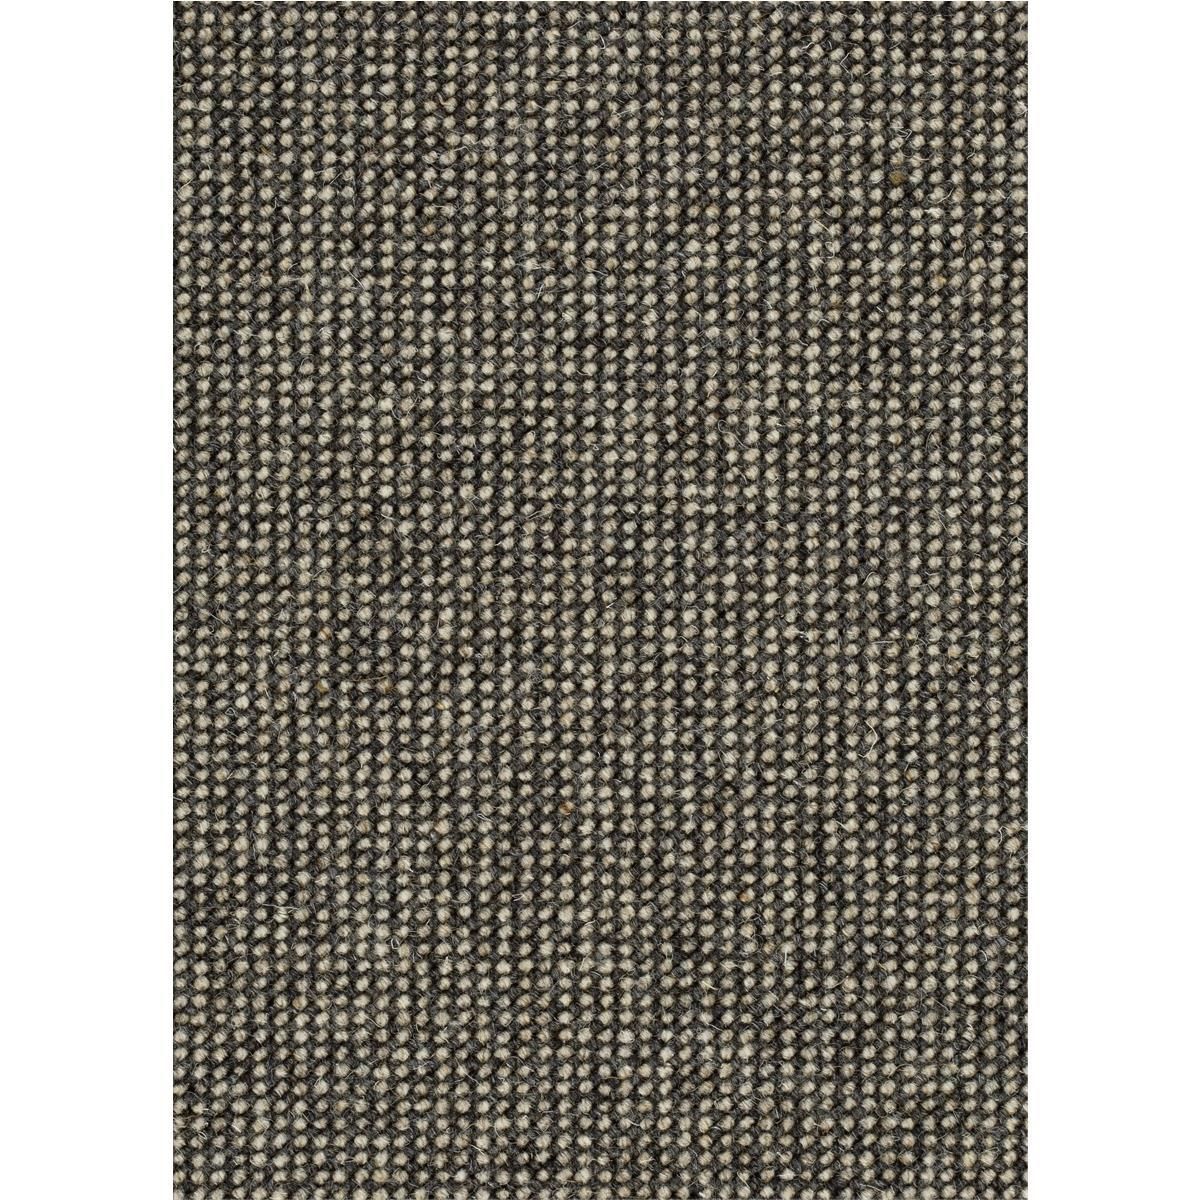 Teppichboden Schurwolle Ohio Farbe 148 Rollenbreite: 500 cm